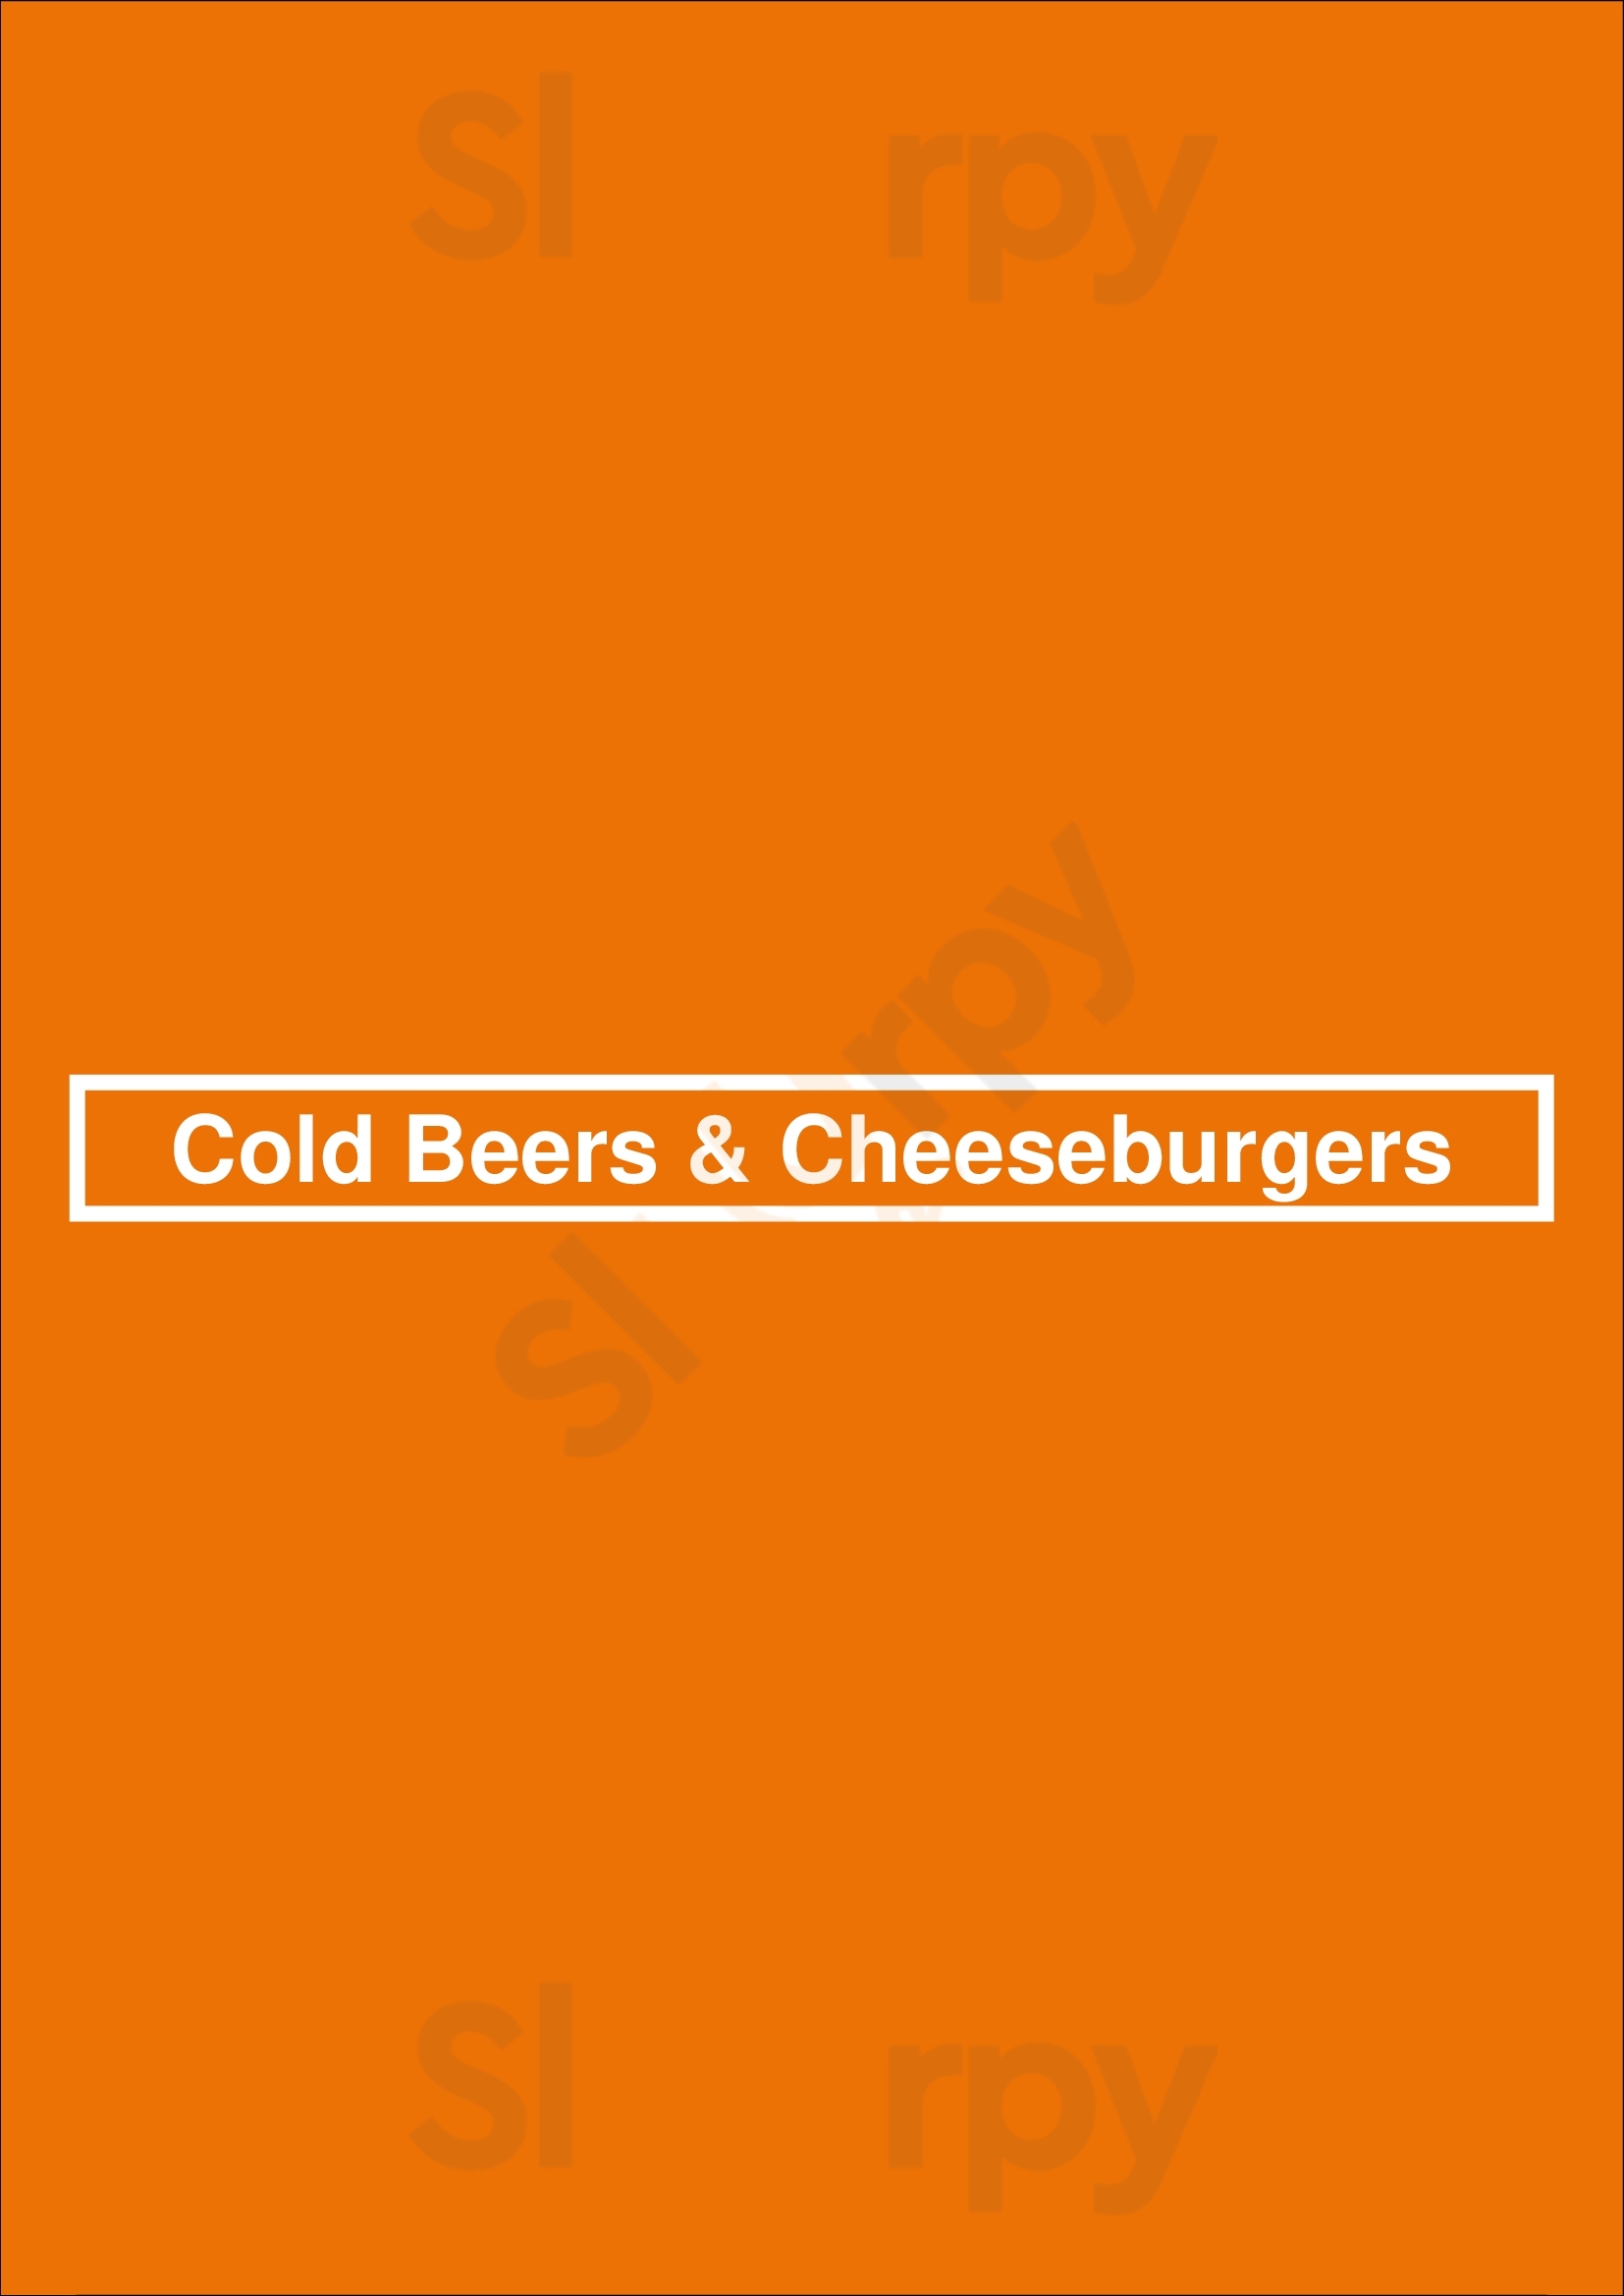 Cold Beers & Cheeseburgers Phoenix Menu - 1